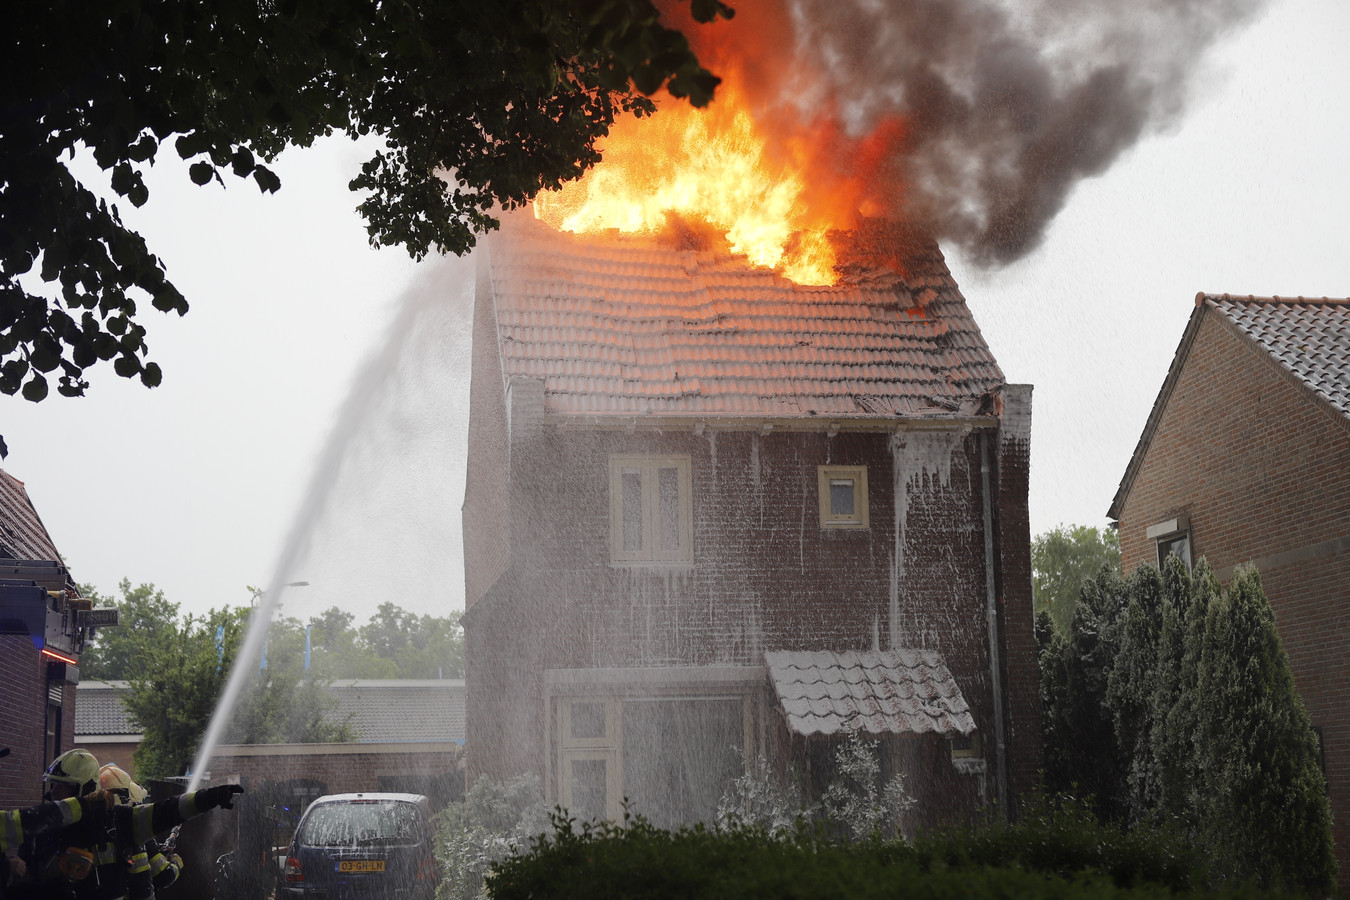 Blikseminslag veroorzaakt brand in Cuijk.